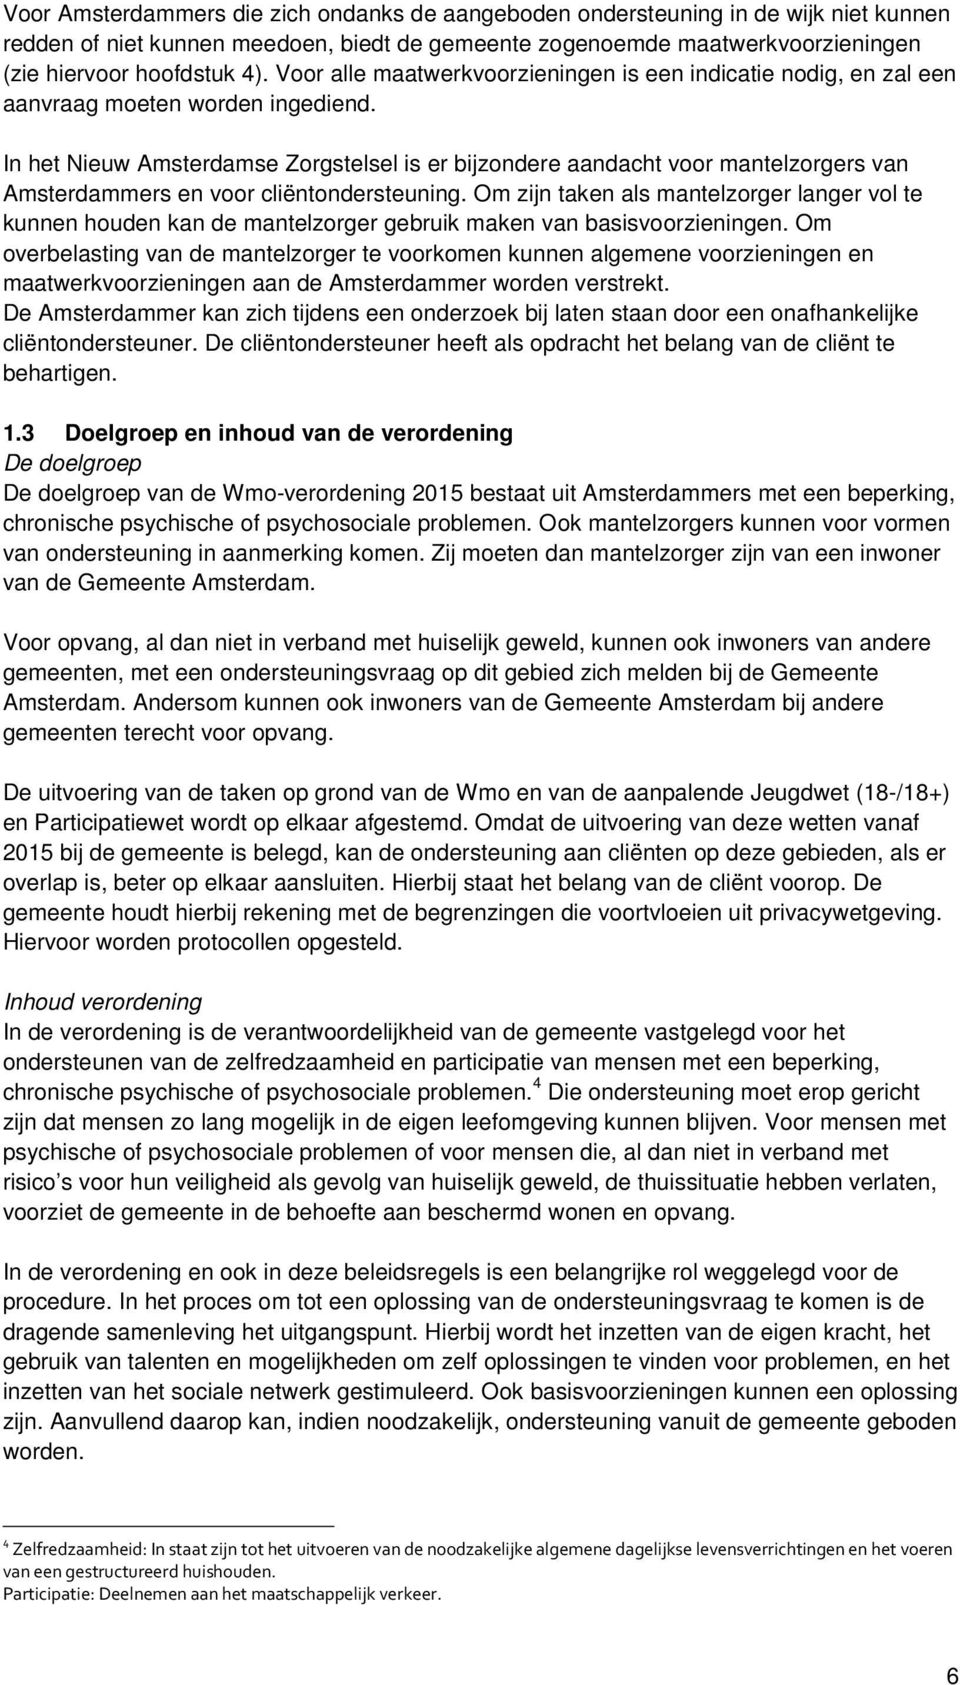 In het Nieuw Amsterdamse Zorgstelsel is er bijzondere aandacht voor mantelzorgers van Amsterdammers en voor cliëntondersteuning.